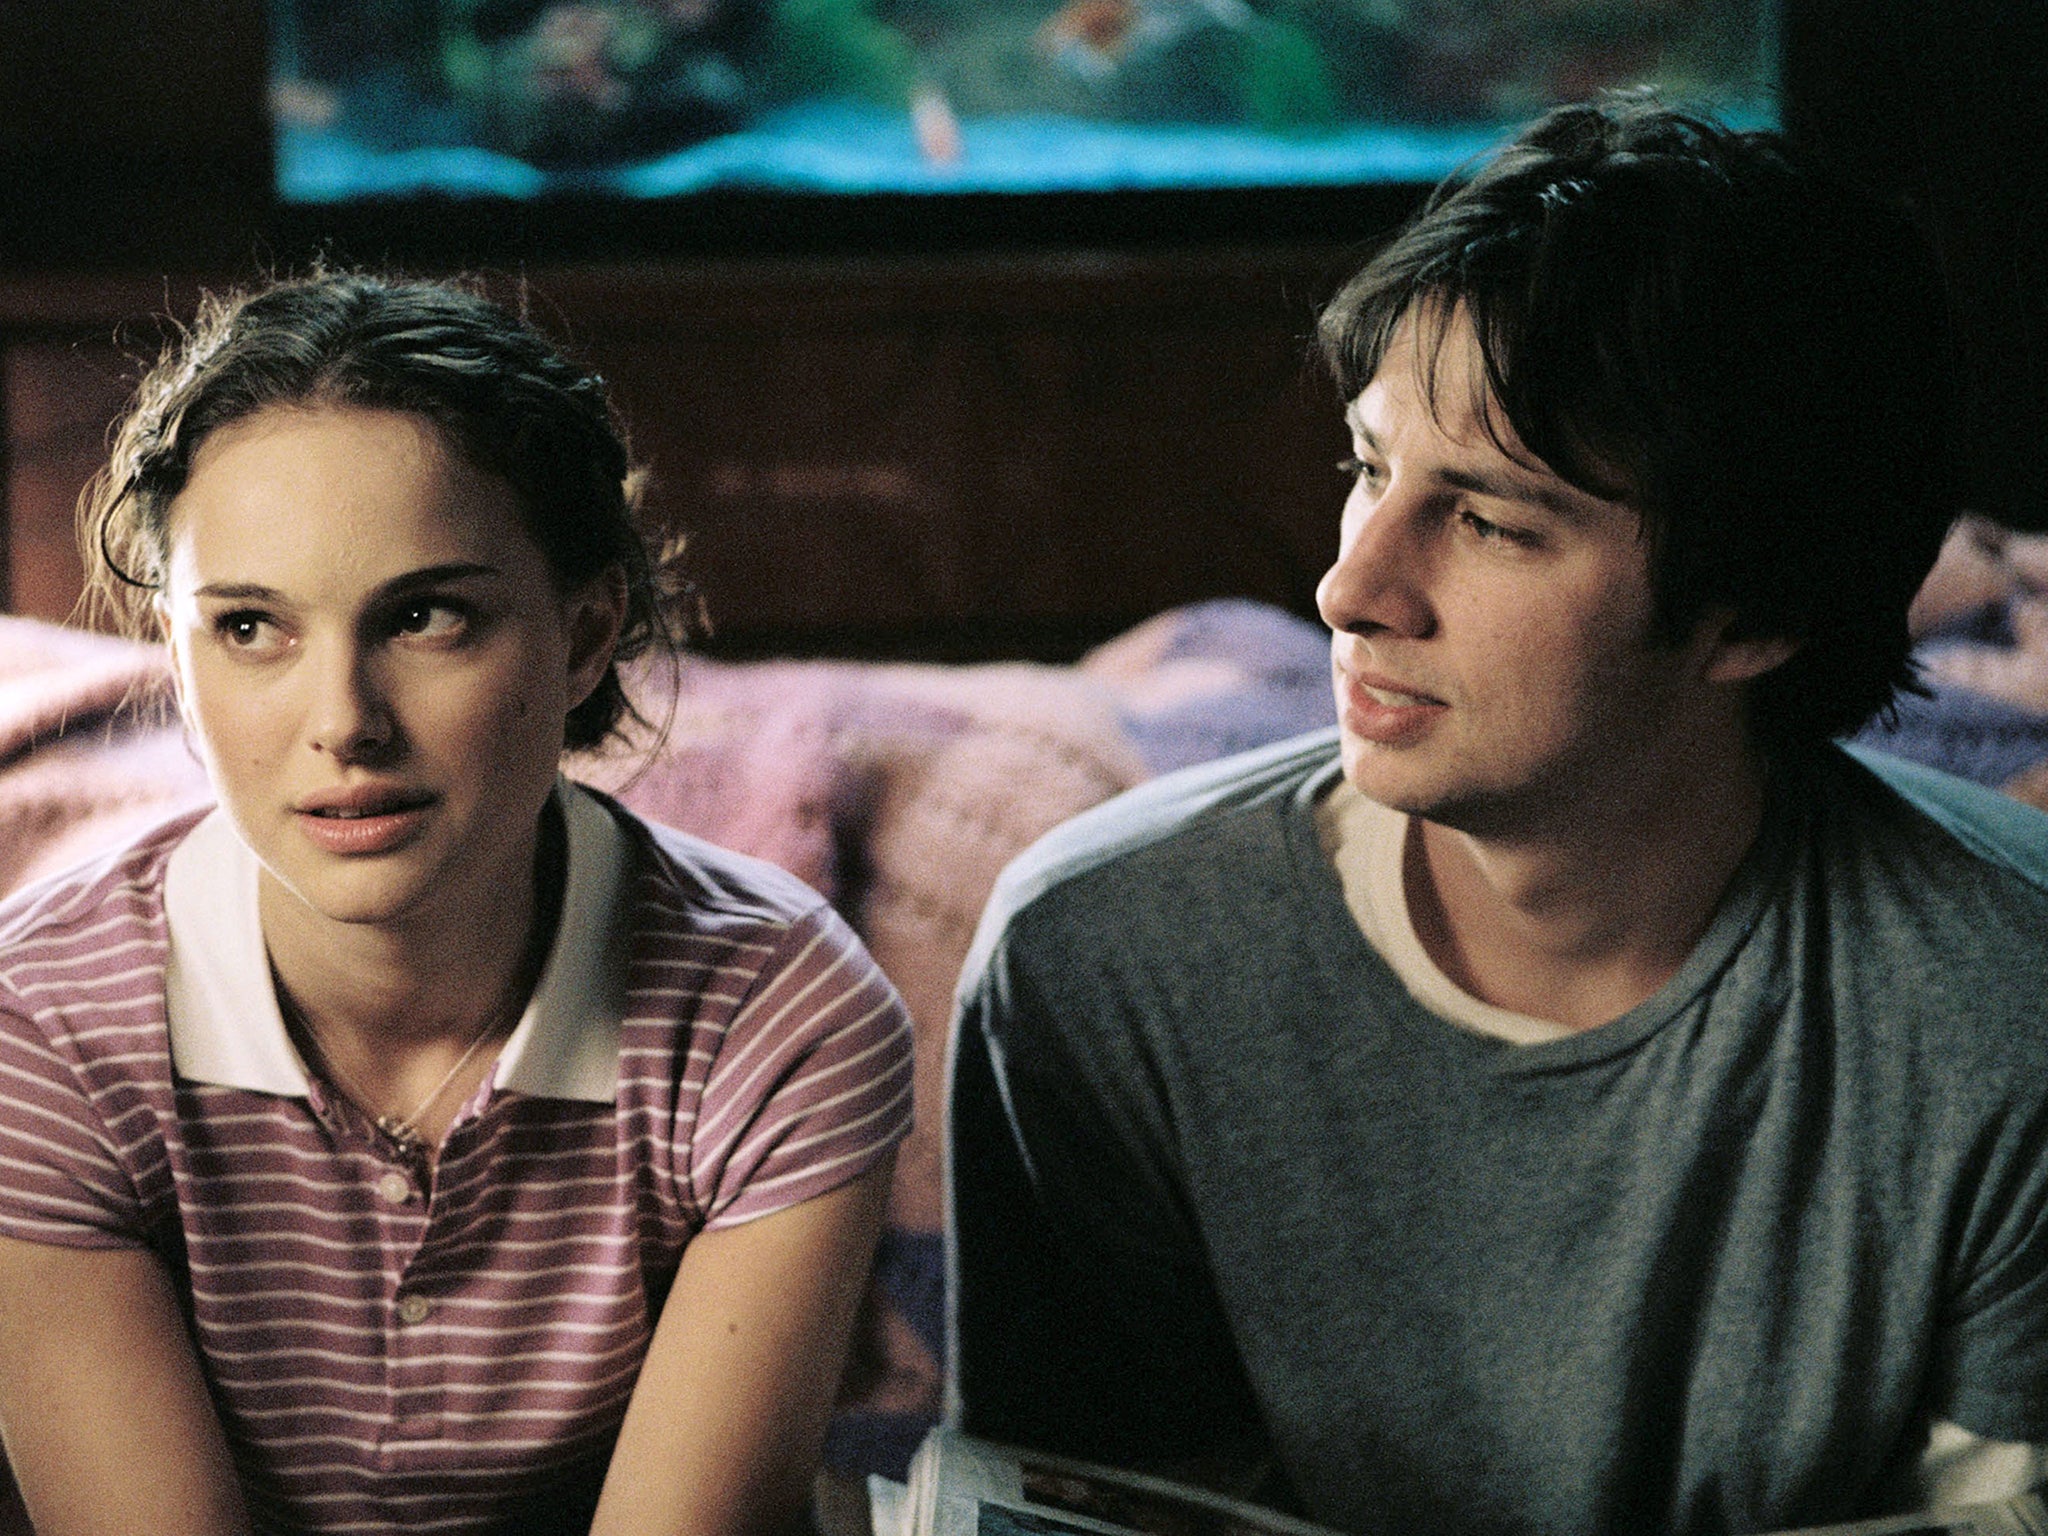 Natalie Portman and Zach Braff in ‘Garden State'